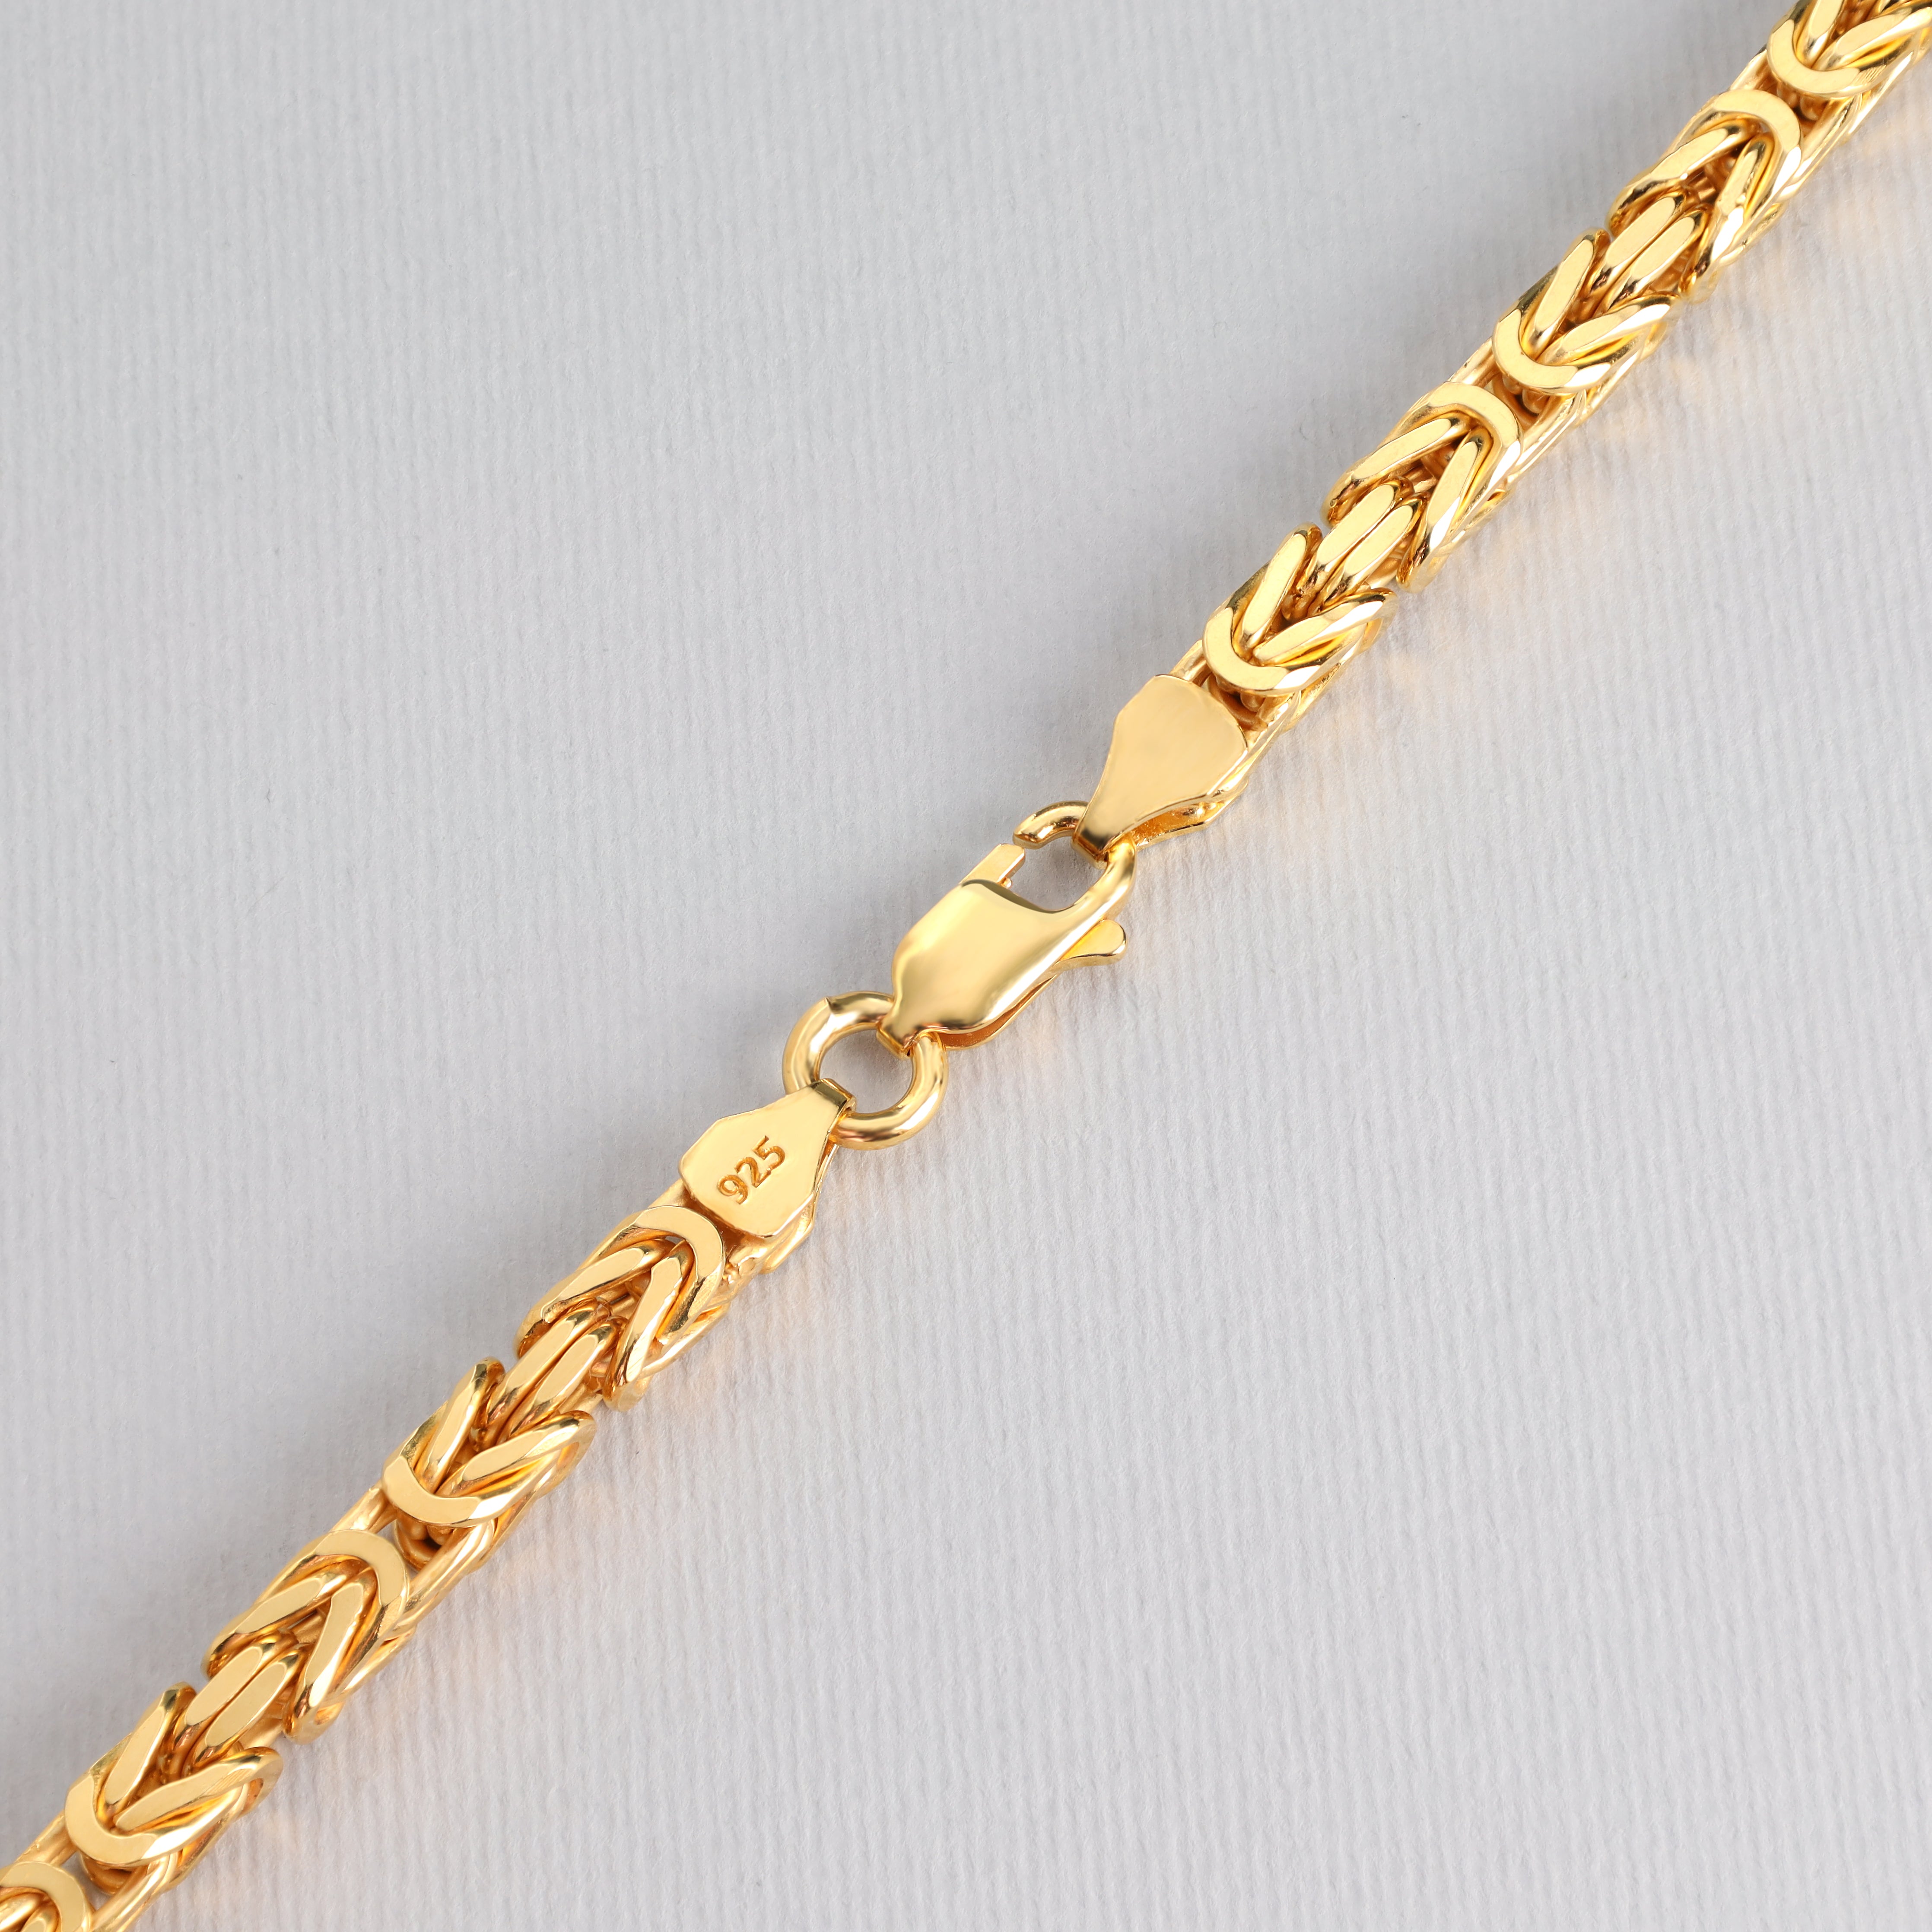 Königskette vierkant vergoldet 5mm breit 65cm lang 925 Sterling Silber (K944G) - Taipan Schmuck